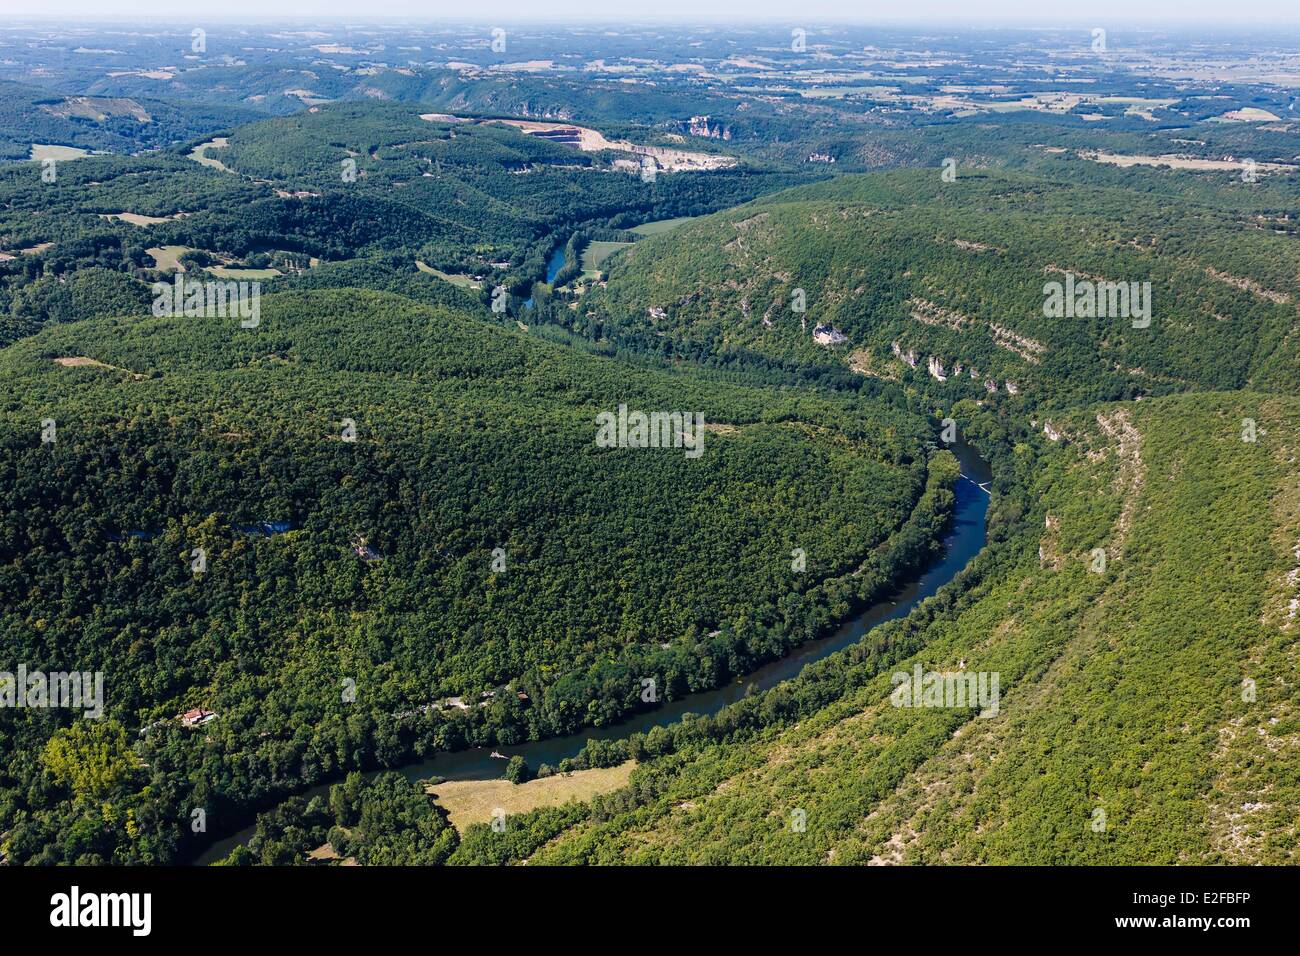 La France, Tarn, Penne, les gorges de l'Aveyron, zone mentionnée de Natura 2000 (vue aérienne) Banque D'Images